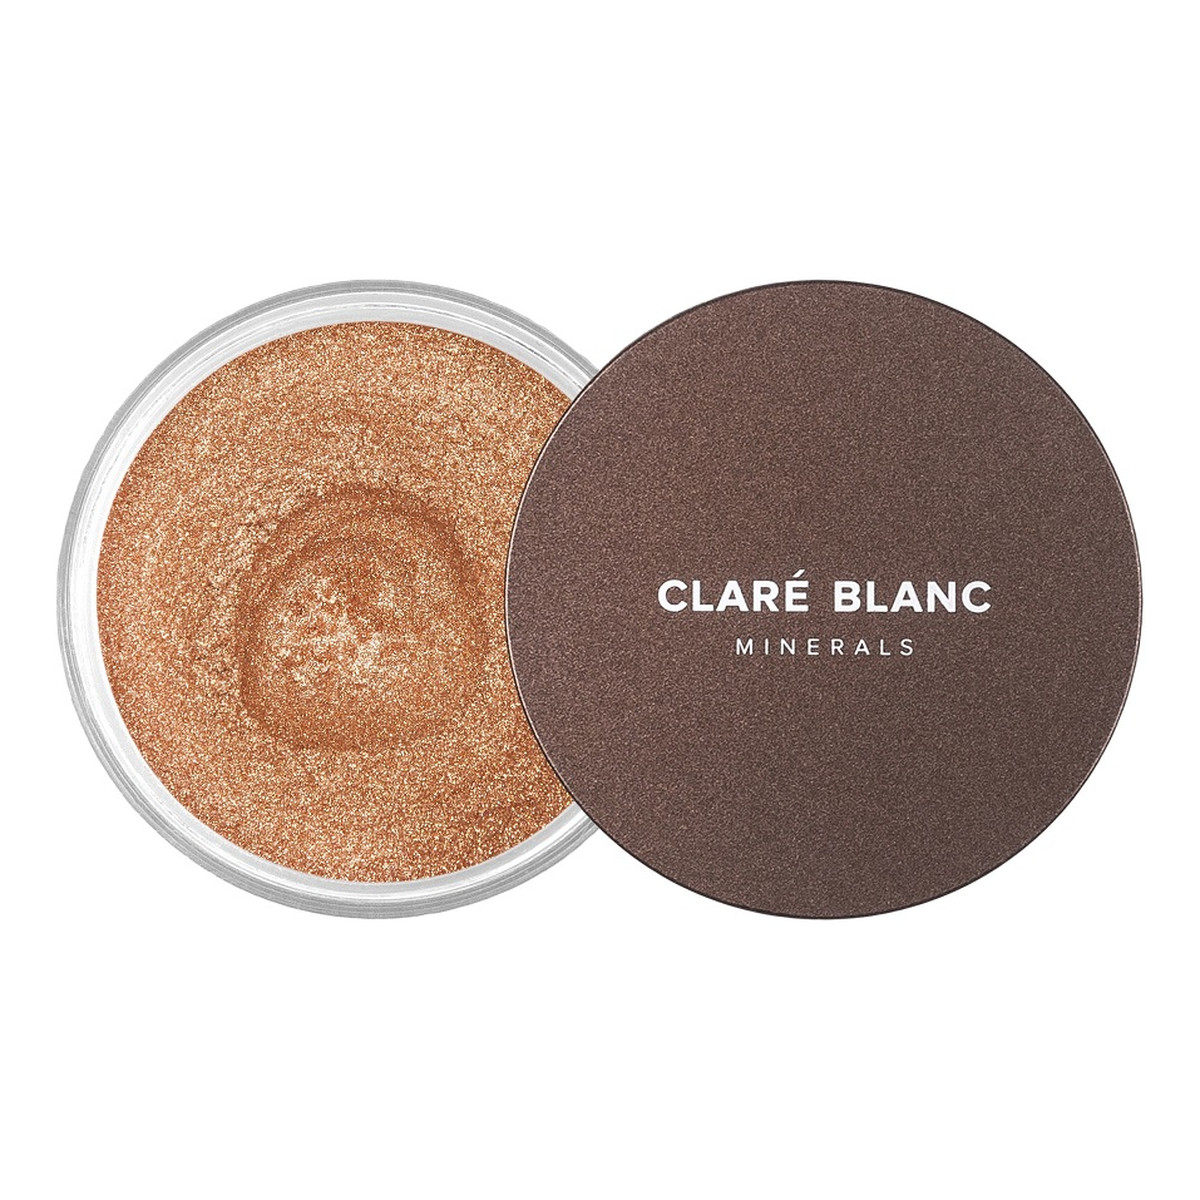 Clare Blanc Body magic dust rozświetlający puder 09 bronze skin 3g